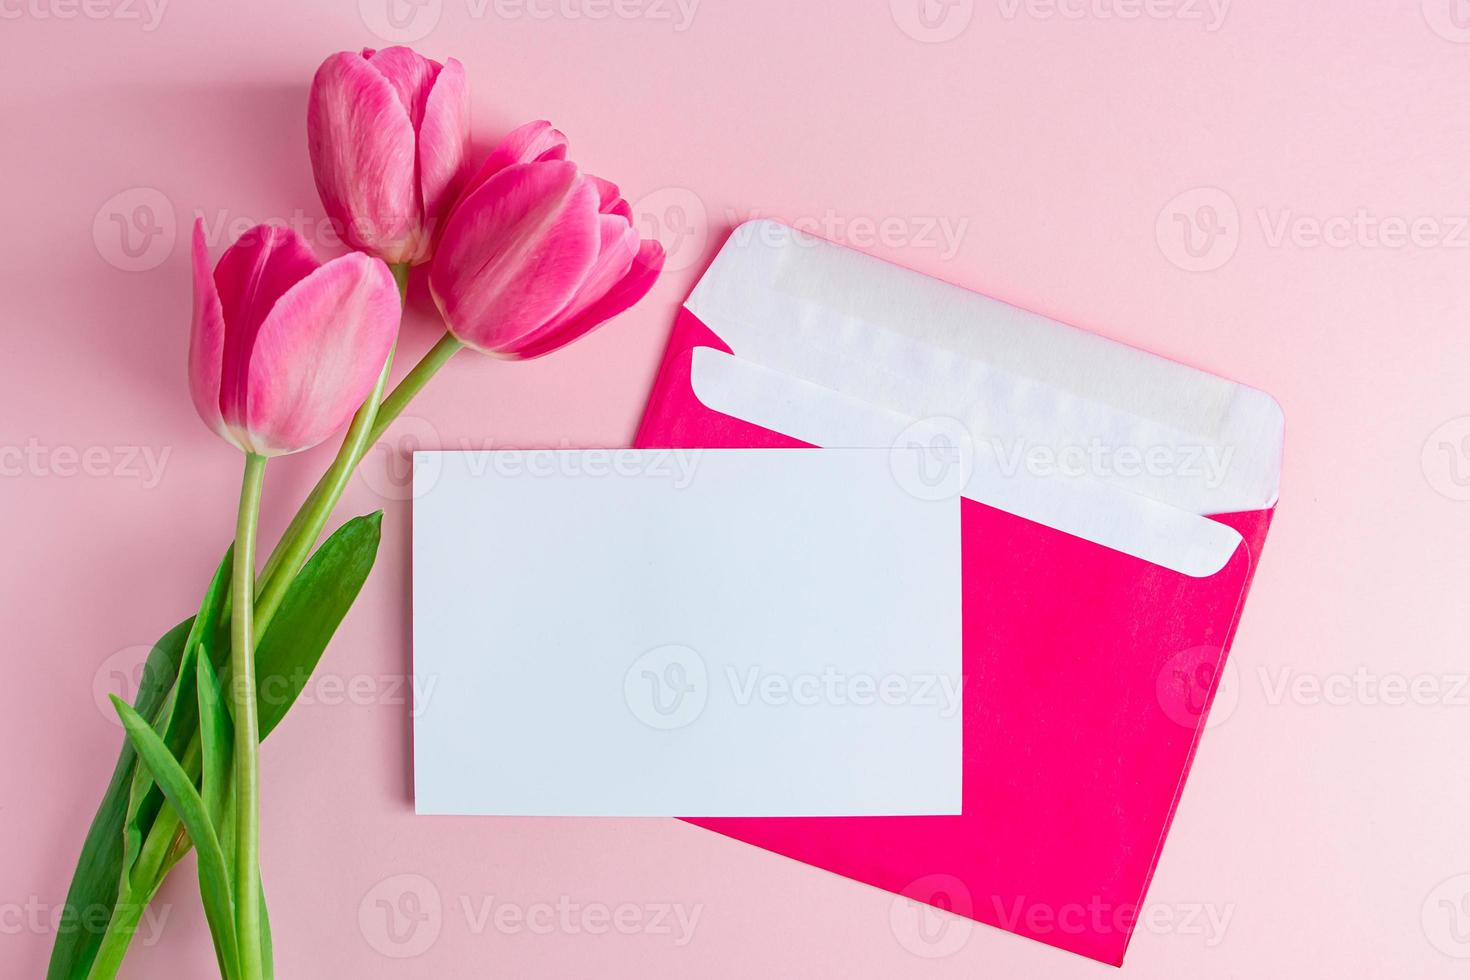 sobre con invitación a vacaciones y ramo de tulipanes sobre fondo rosa. foto